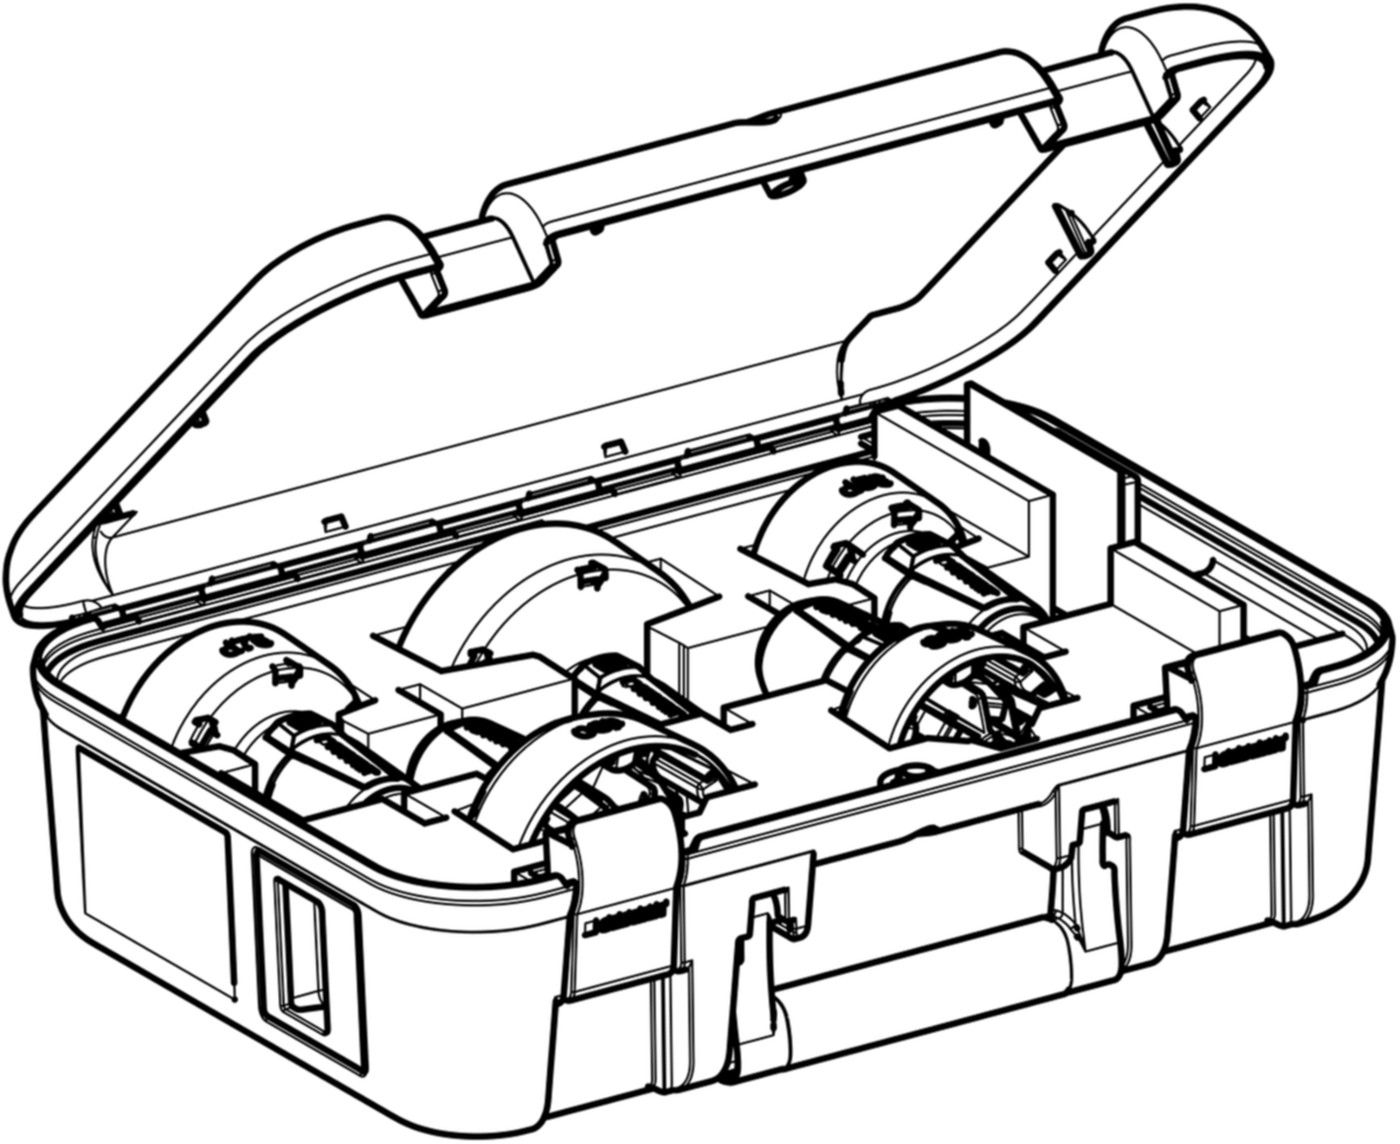 Set Rohrschaber in Koffer 56-110mm 359.916.00.1 für PE und Silent - Geberit Werkzeuge und Zubehör